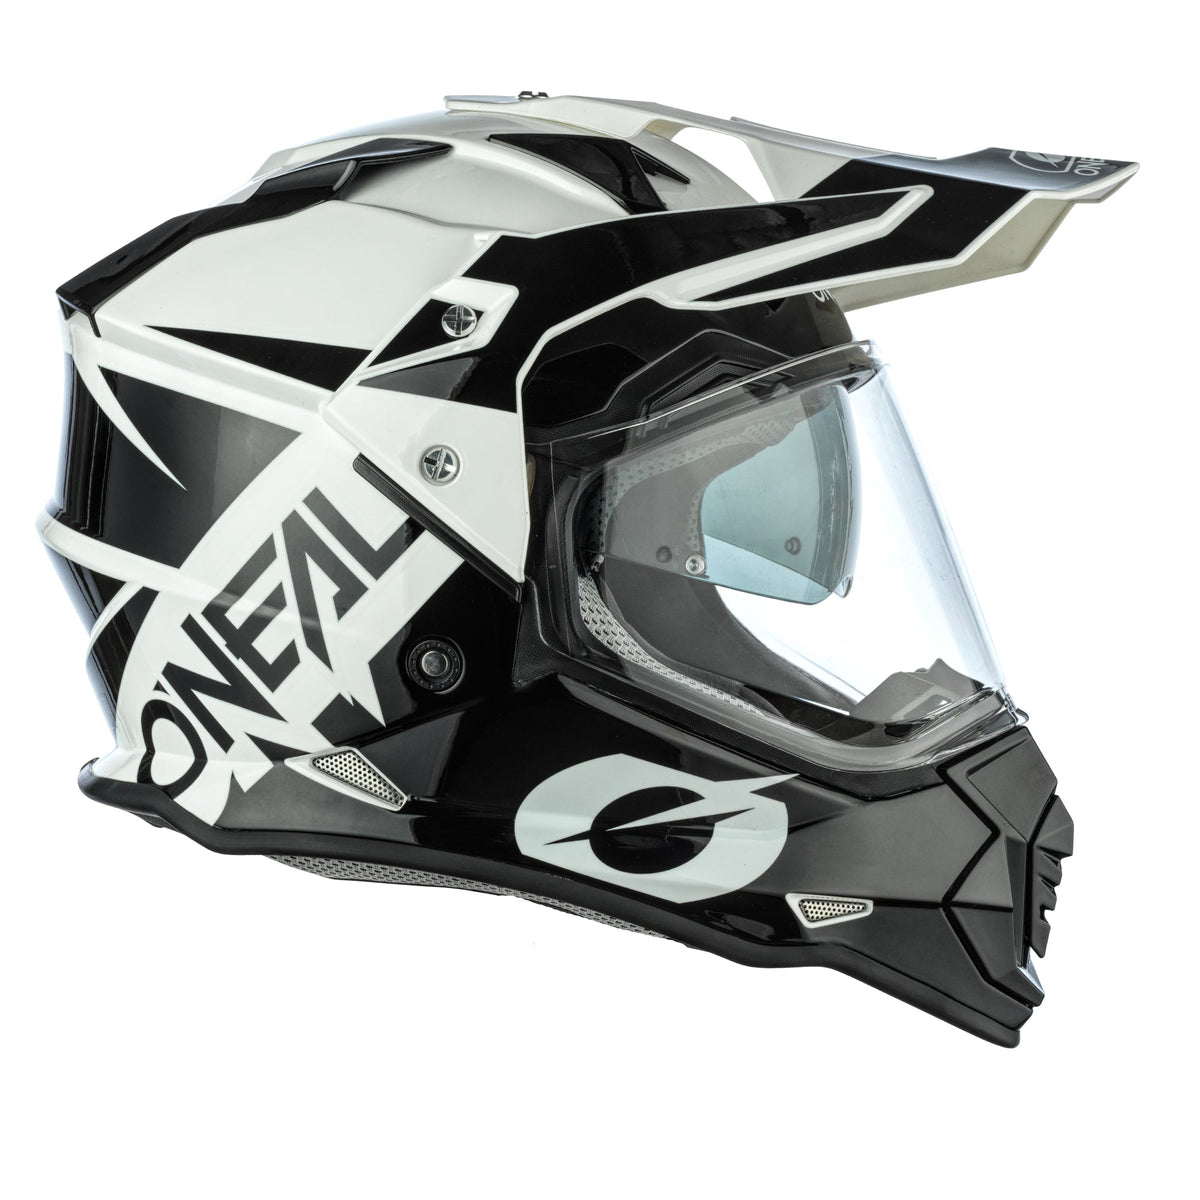 ONeal Sierra R Motocross Helmet Off Road Dual Sport Motorcycle O Neal ATV Quad 